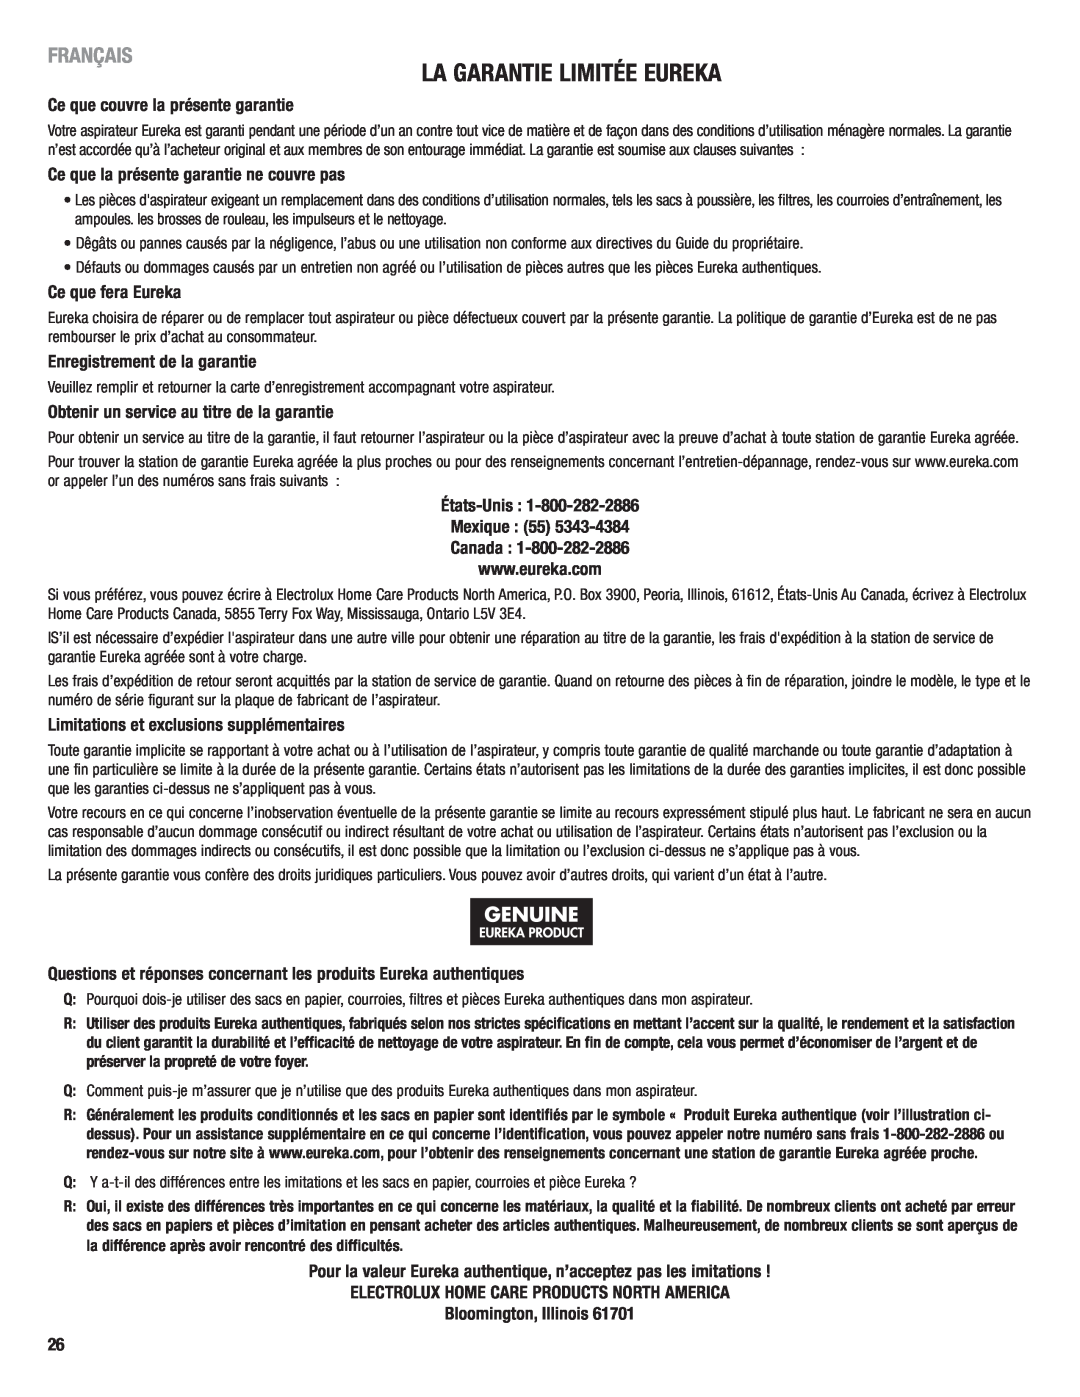 Eureka 2940 manual La Garantie Limitée Eureka, Français, Ce que couvre la présente garantie, Ce que fera Eureka 